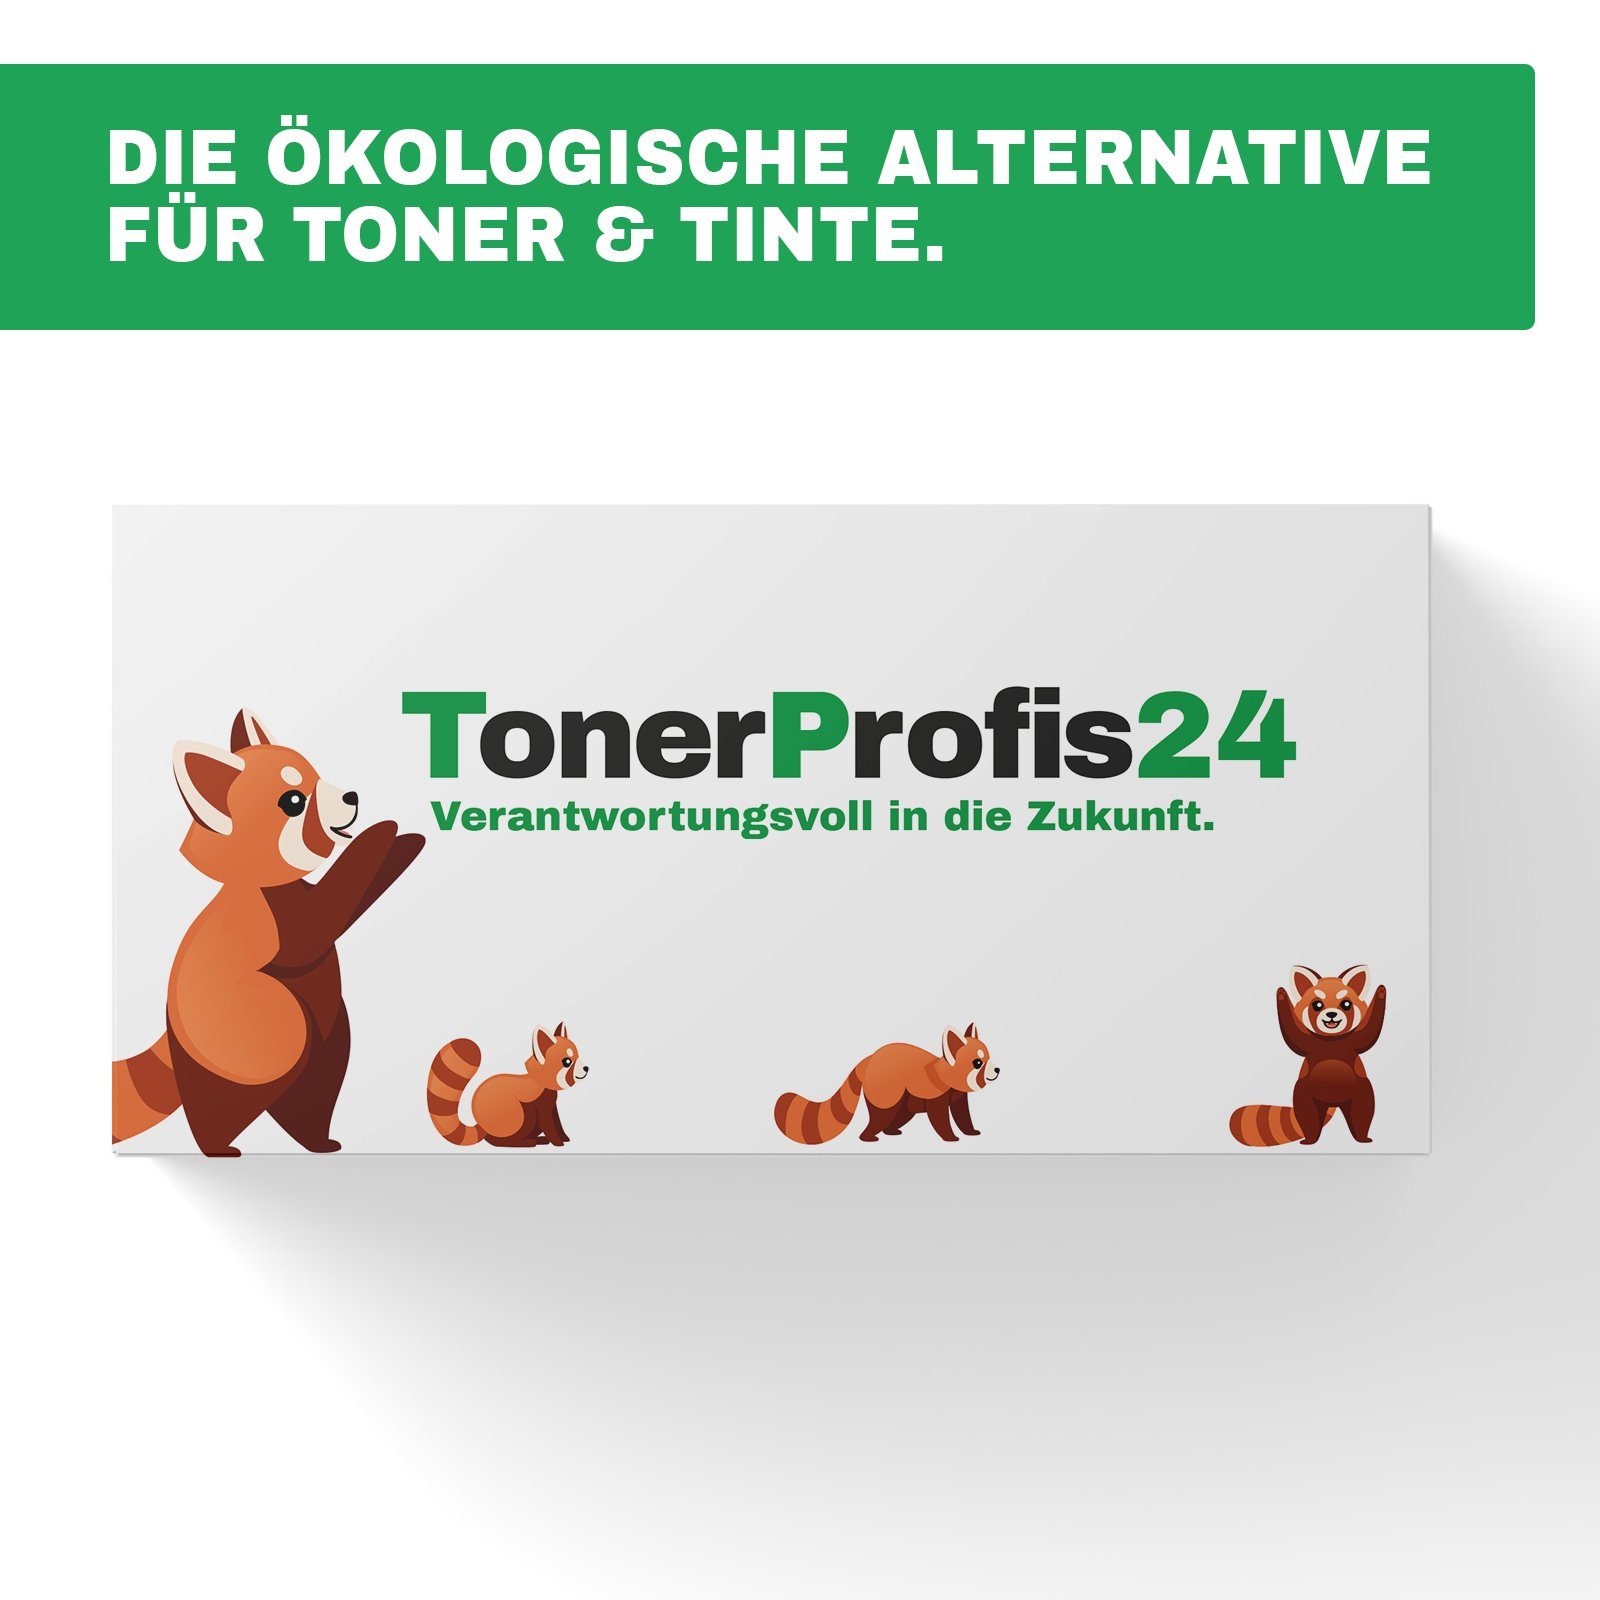 Tonerkartusche TonerProfis24 * schwarz ReFill TN-242BK, Toner Brother ersetzt